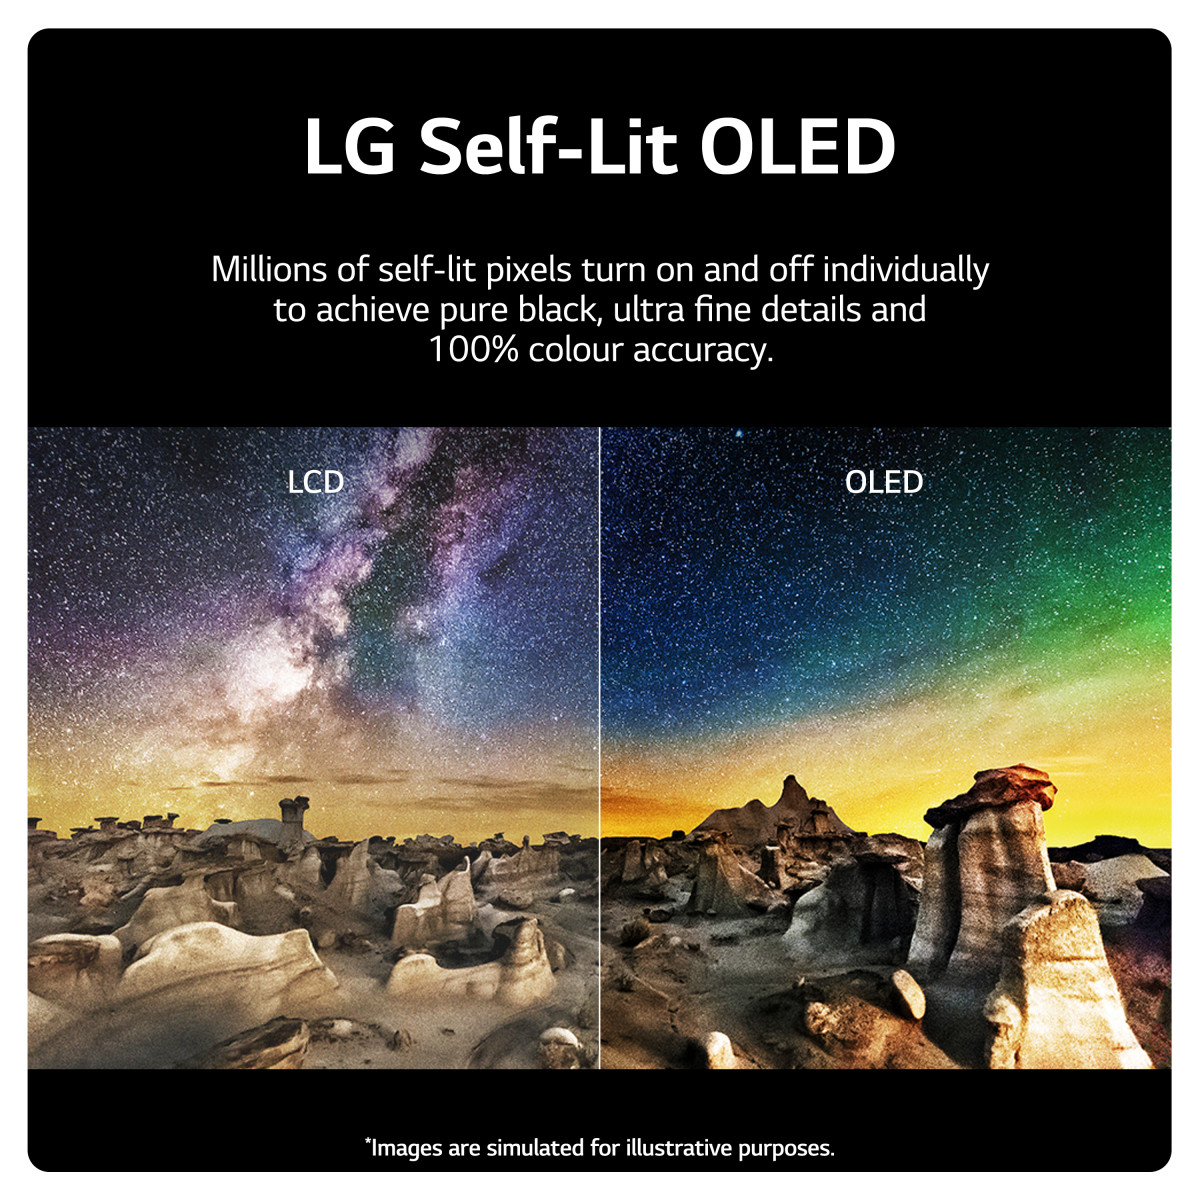 LG OLED evo C3 55 4K Smart TV